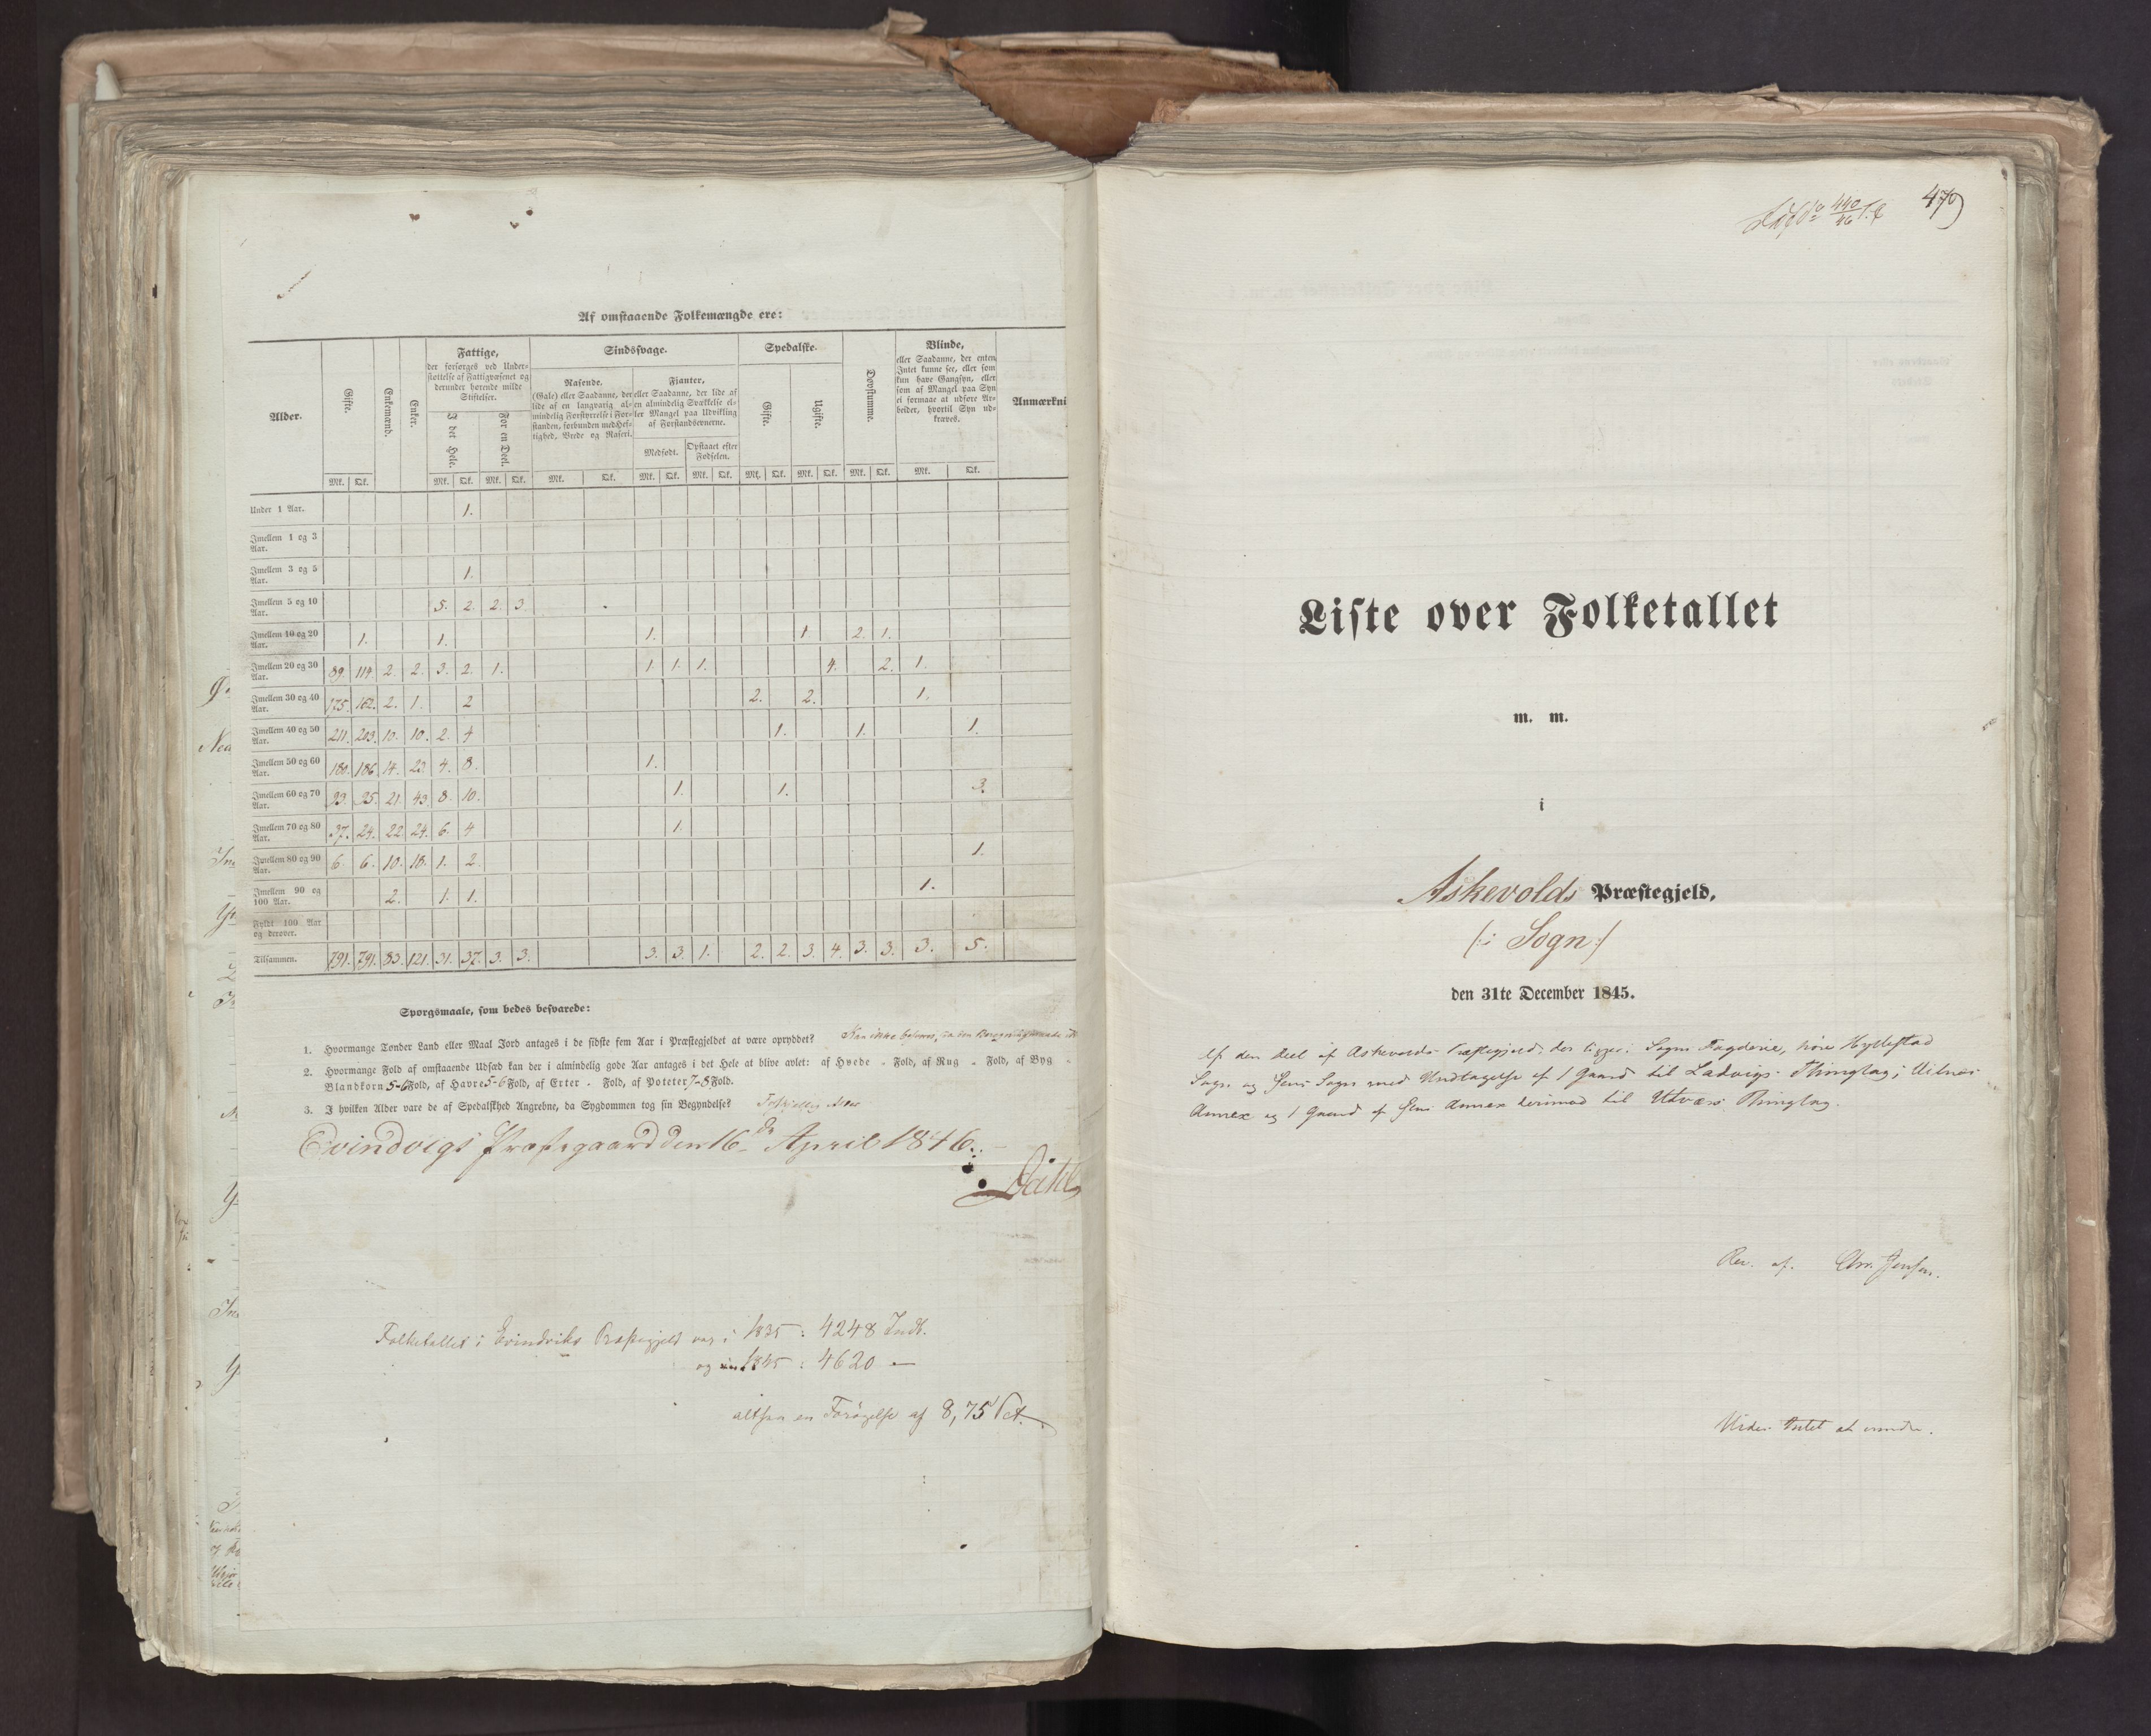 RA, Census 1845, vol. 7: Søndre Bergenhus amt og Nordre Bergenhus amt, 1845, p. 479